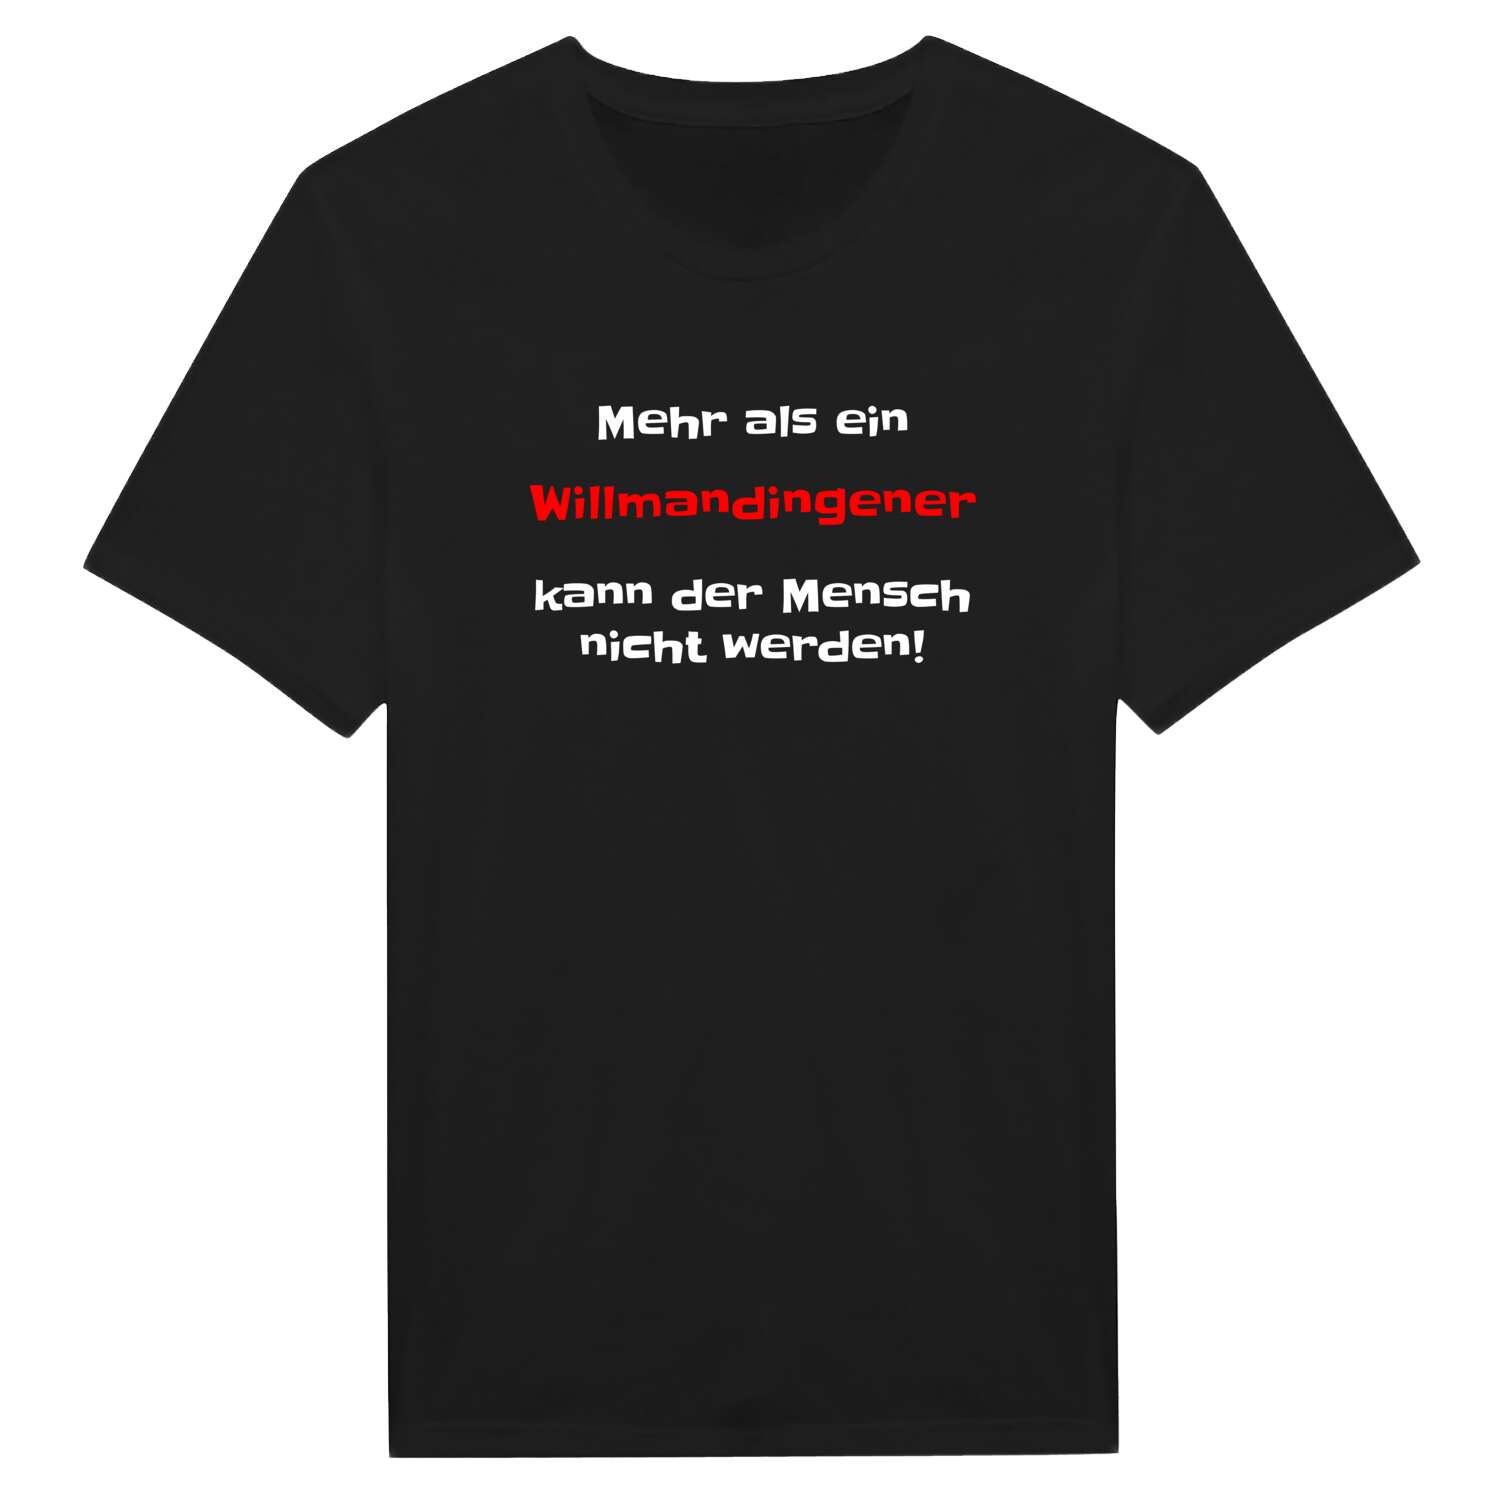 Willmandingen T-Shirt »Mehr als ein«